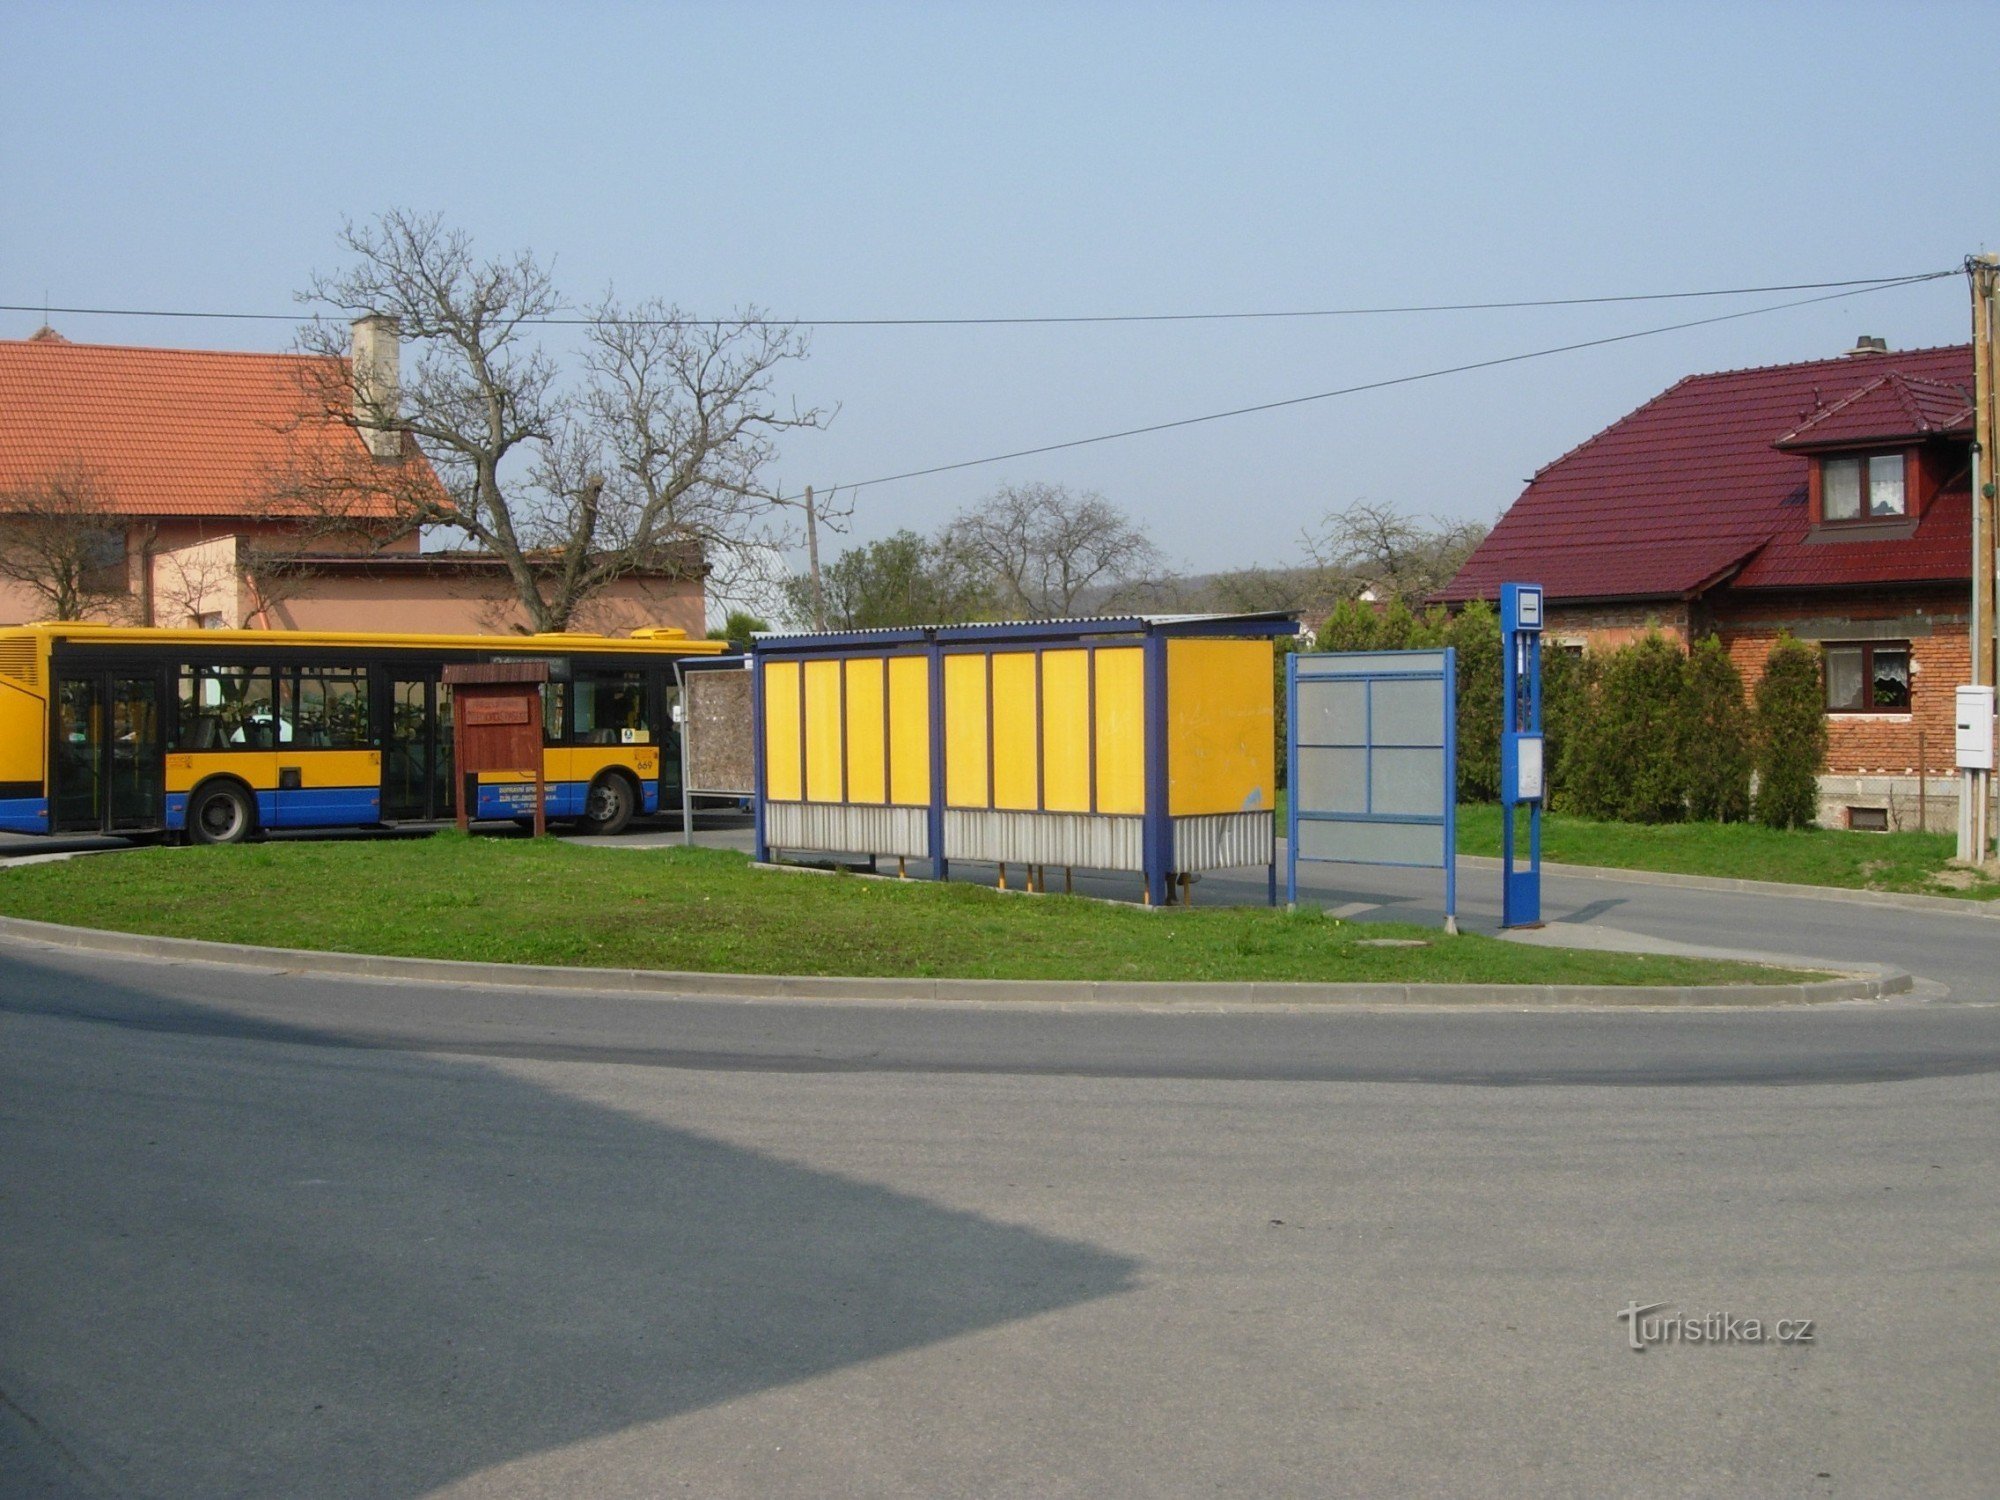 Turnpike en Jaroslavice, inicio de la ruta